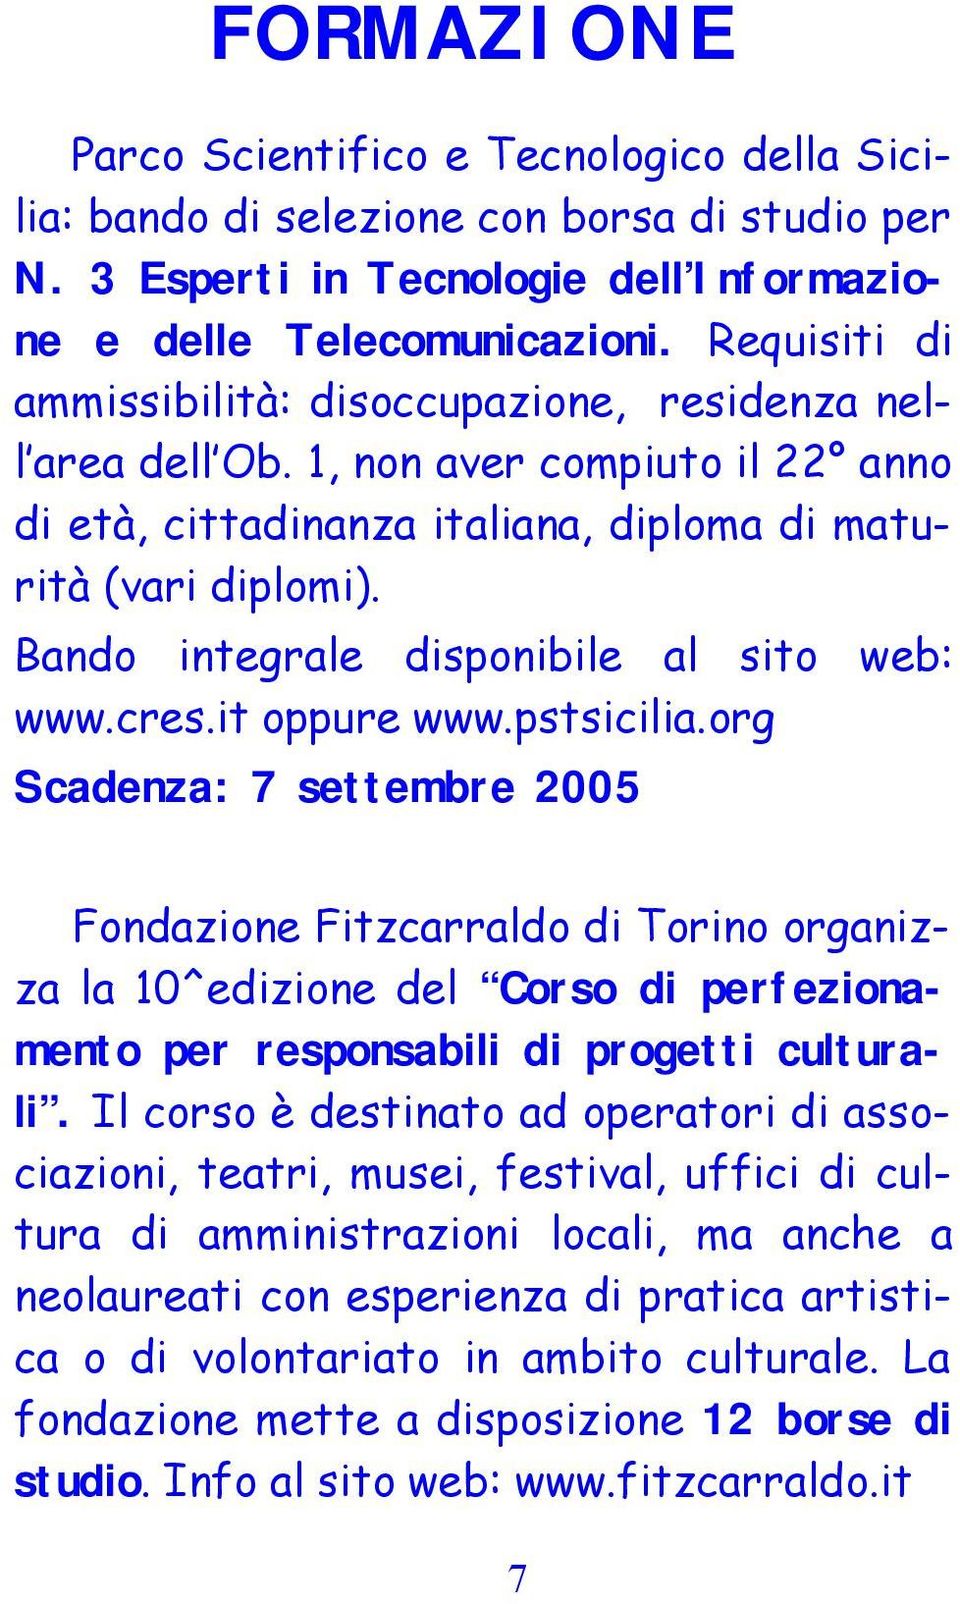 Bando integrale disponibile al sito web: www.cres.it oppure www.pstsicilia.